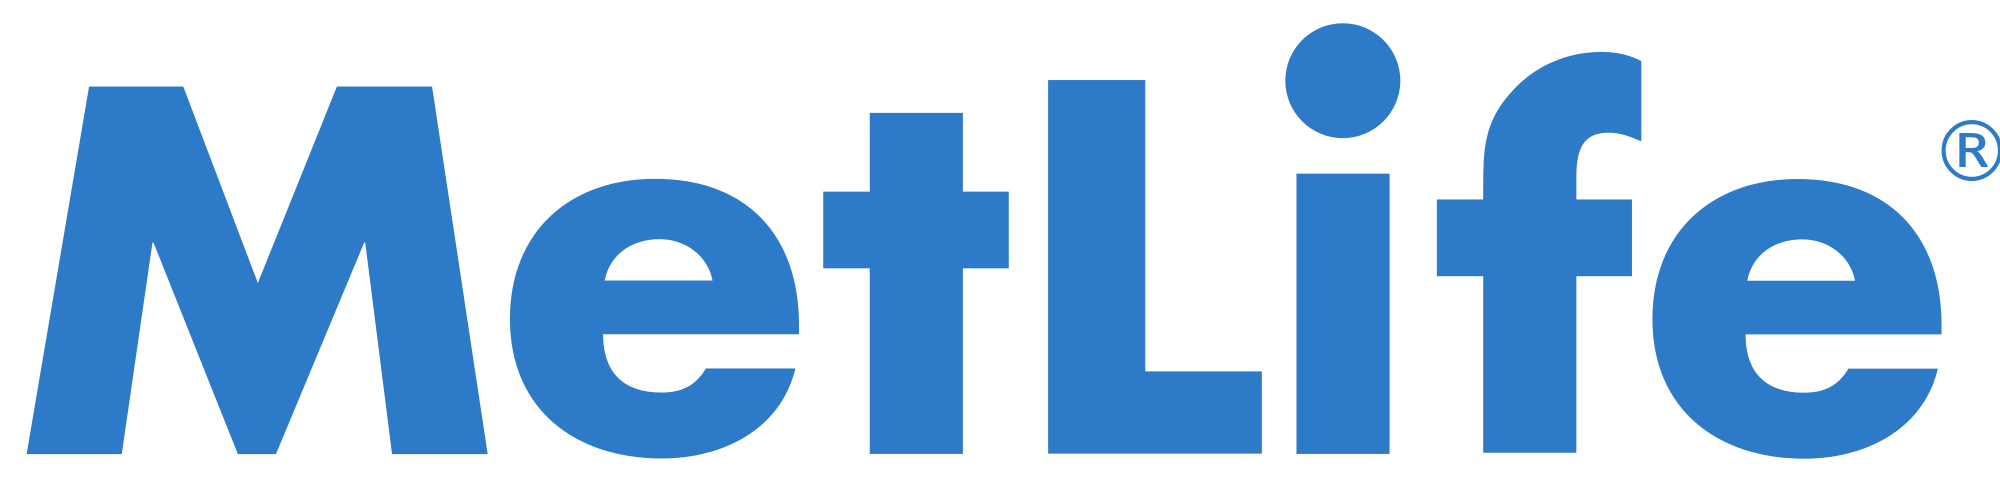 MetLife-Logo.svg_.png